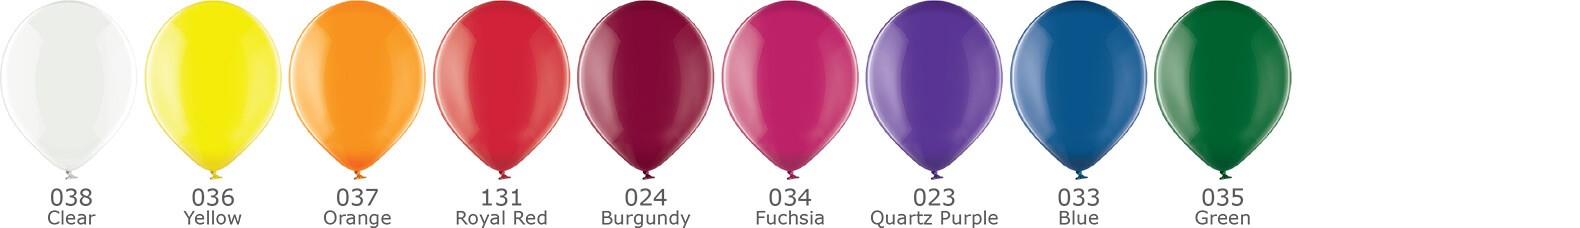 Farby priehľadných kryštálových balónov